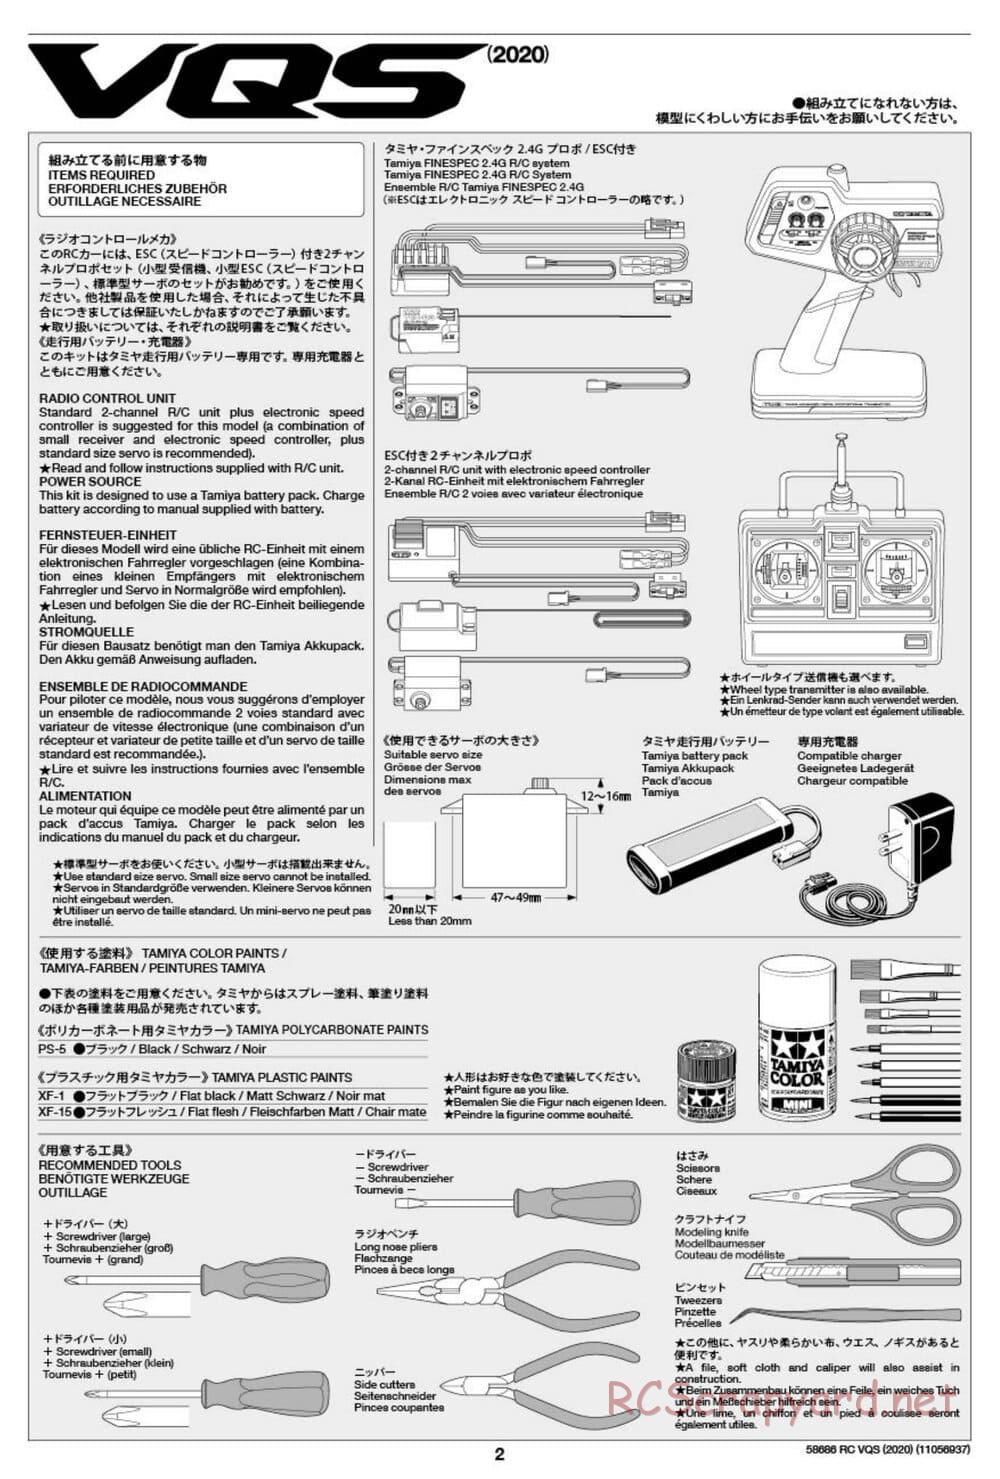 Tamiya - VQS (2020) - AV Chassis - Manual - Page 2